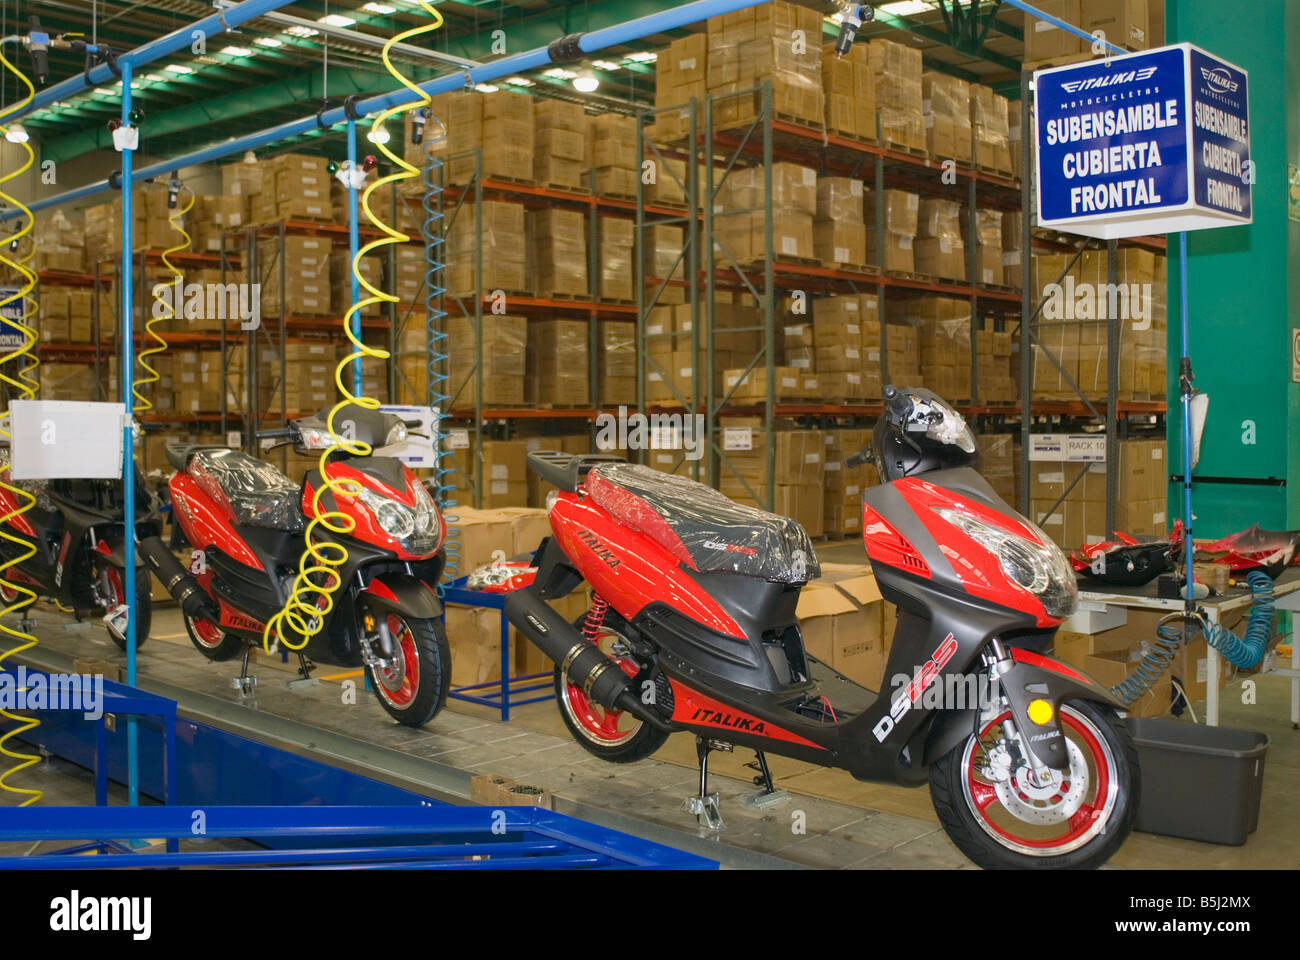 Empresa China Motocicleta Italika Planta De Ensamblaje En Toluca